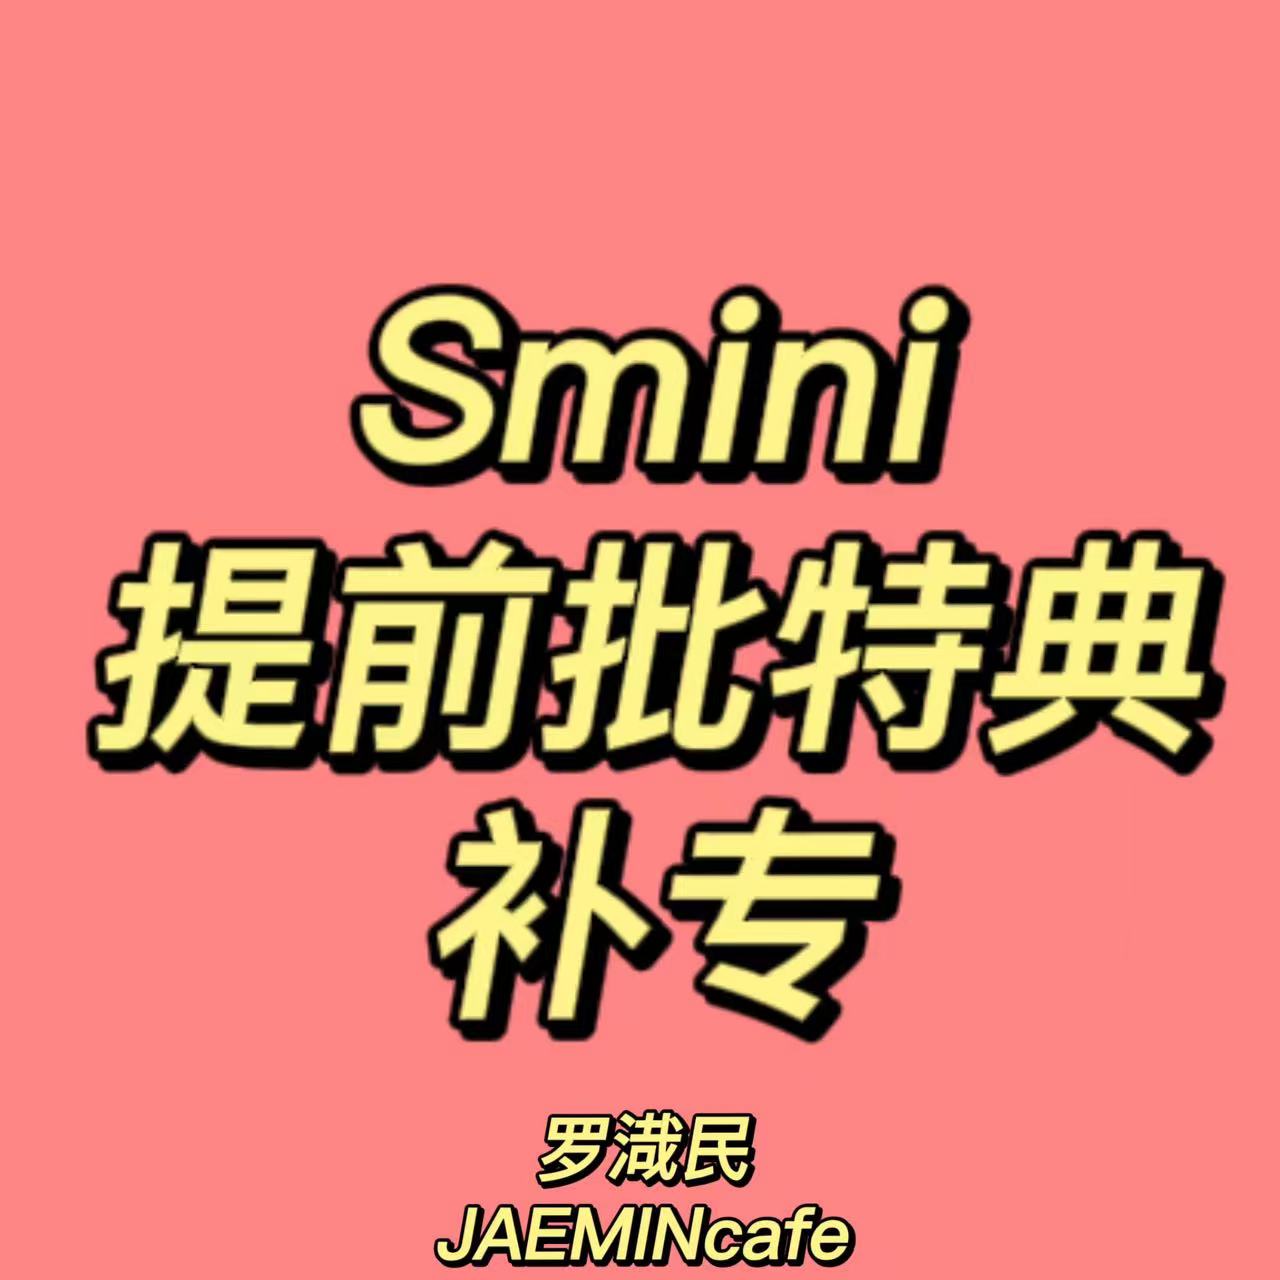 [全款 提前批特典补专] NCT DREAM - 正规3辑 [ISTJ] (SMini Ver.) (Smart Album) (随机版本)_罗渽民吧